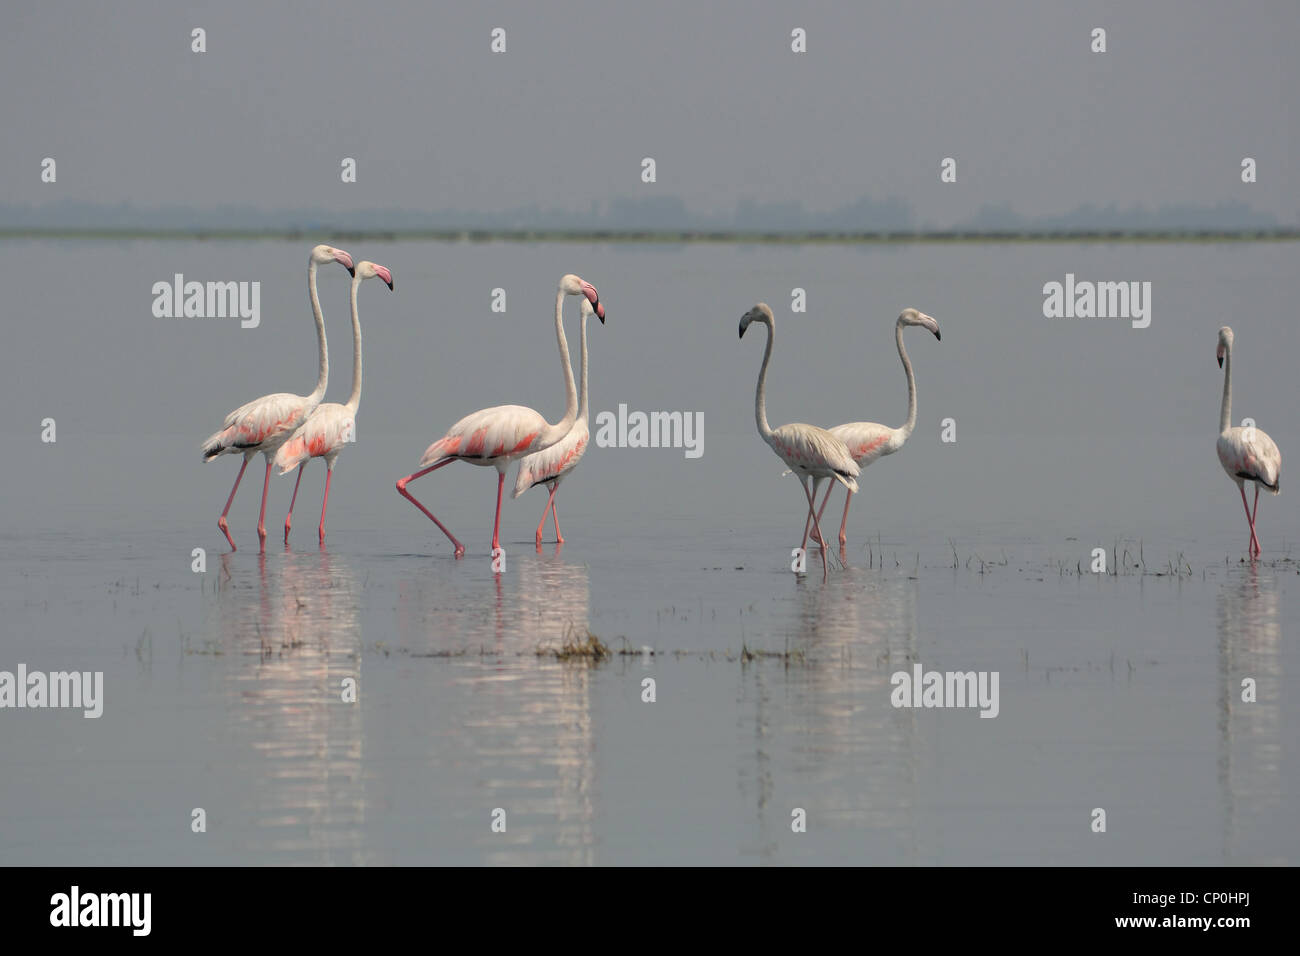 Flamingos in Nalabana bird sanctuary Stock Photo